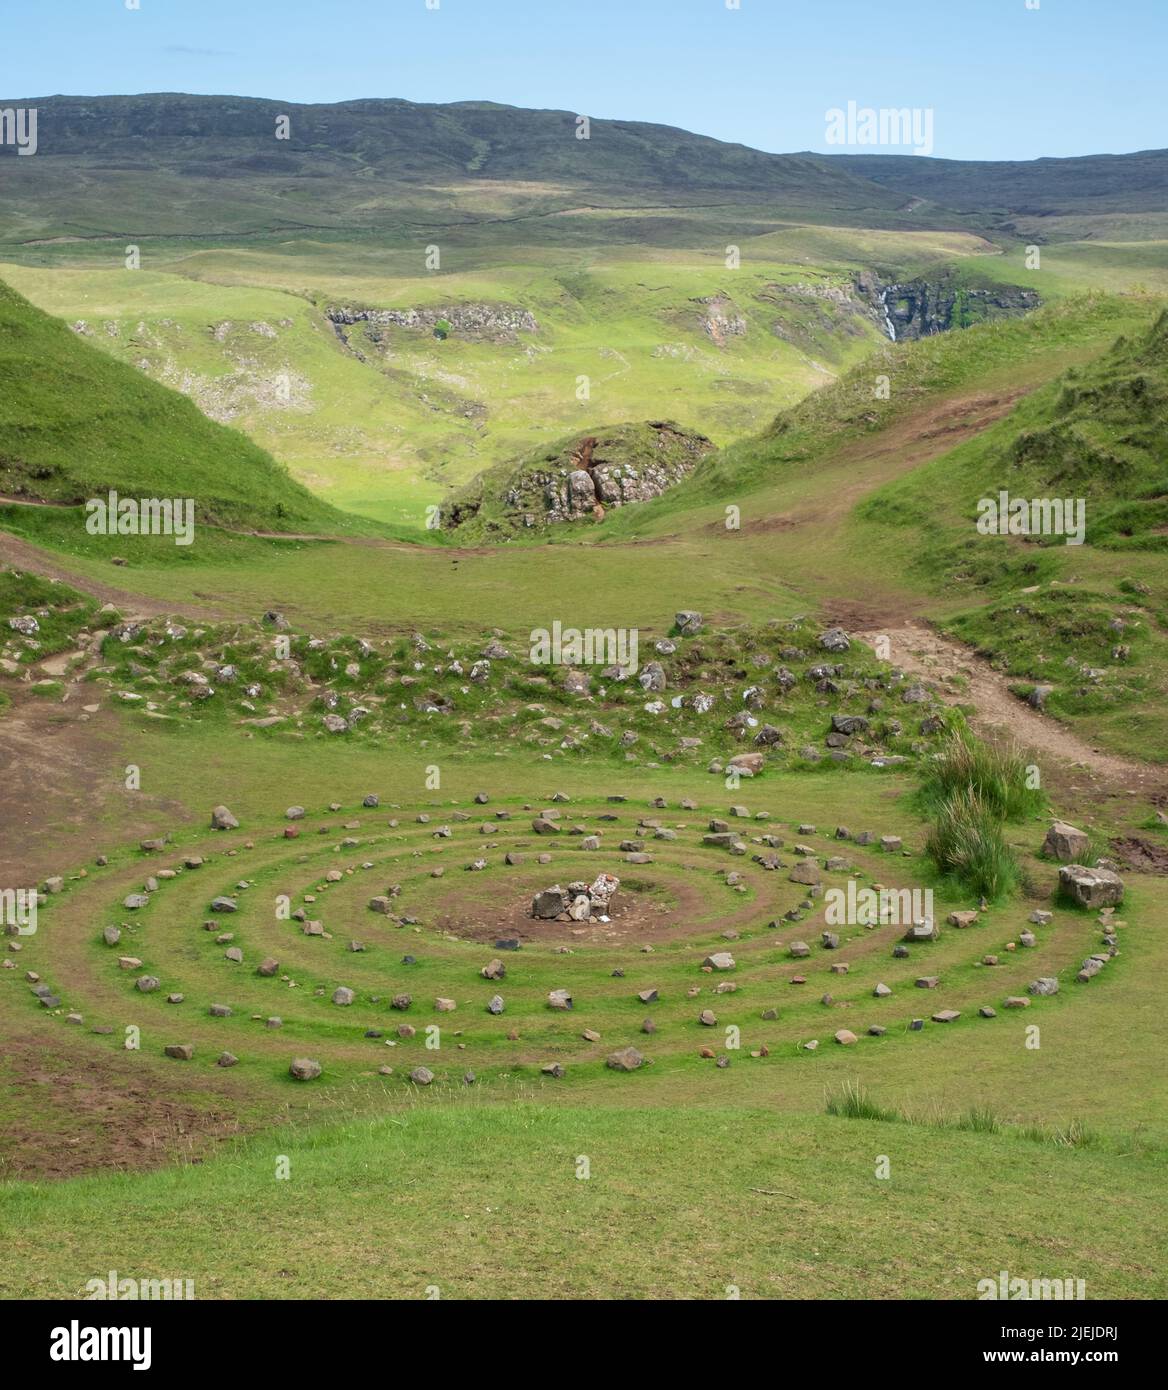 Cercle de pierres créé par les touristes à Fairy Glen sur la péninsule Trotternish, île d'Uig de Skye, Écosse Royaume-Uni. Banque D'Images